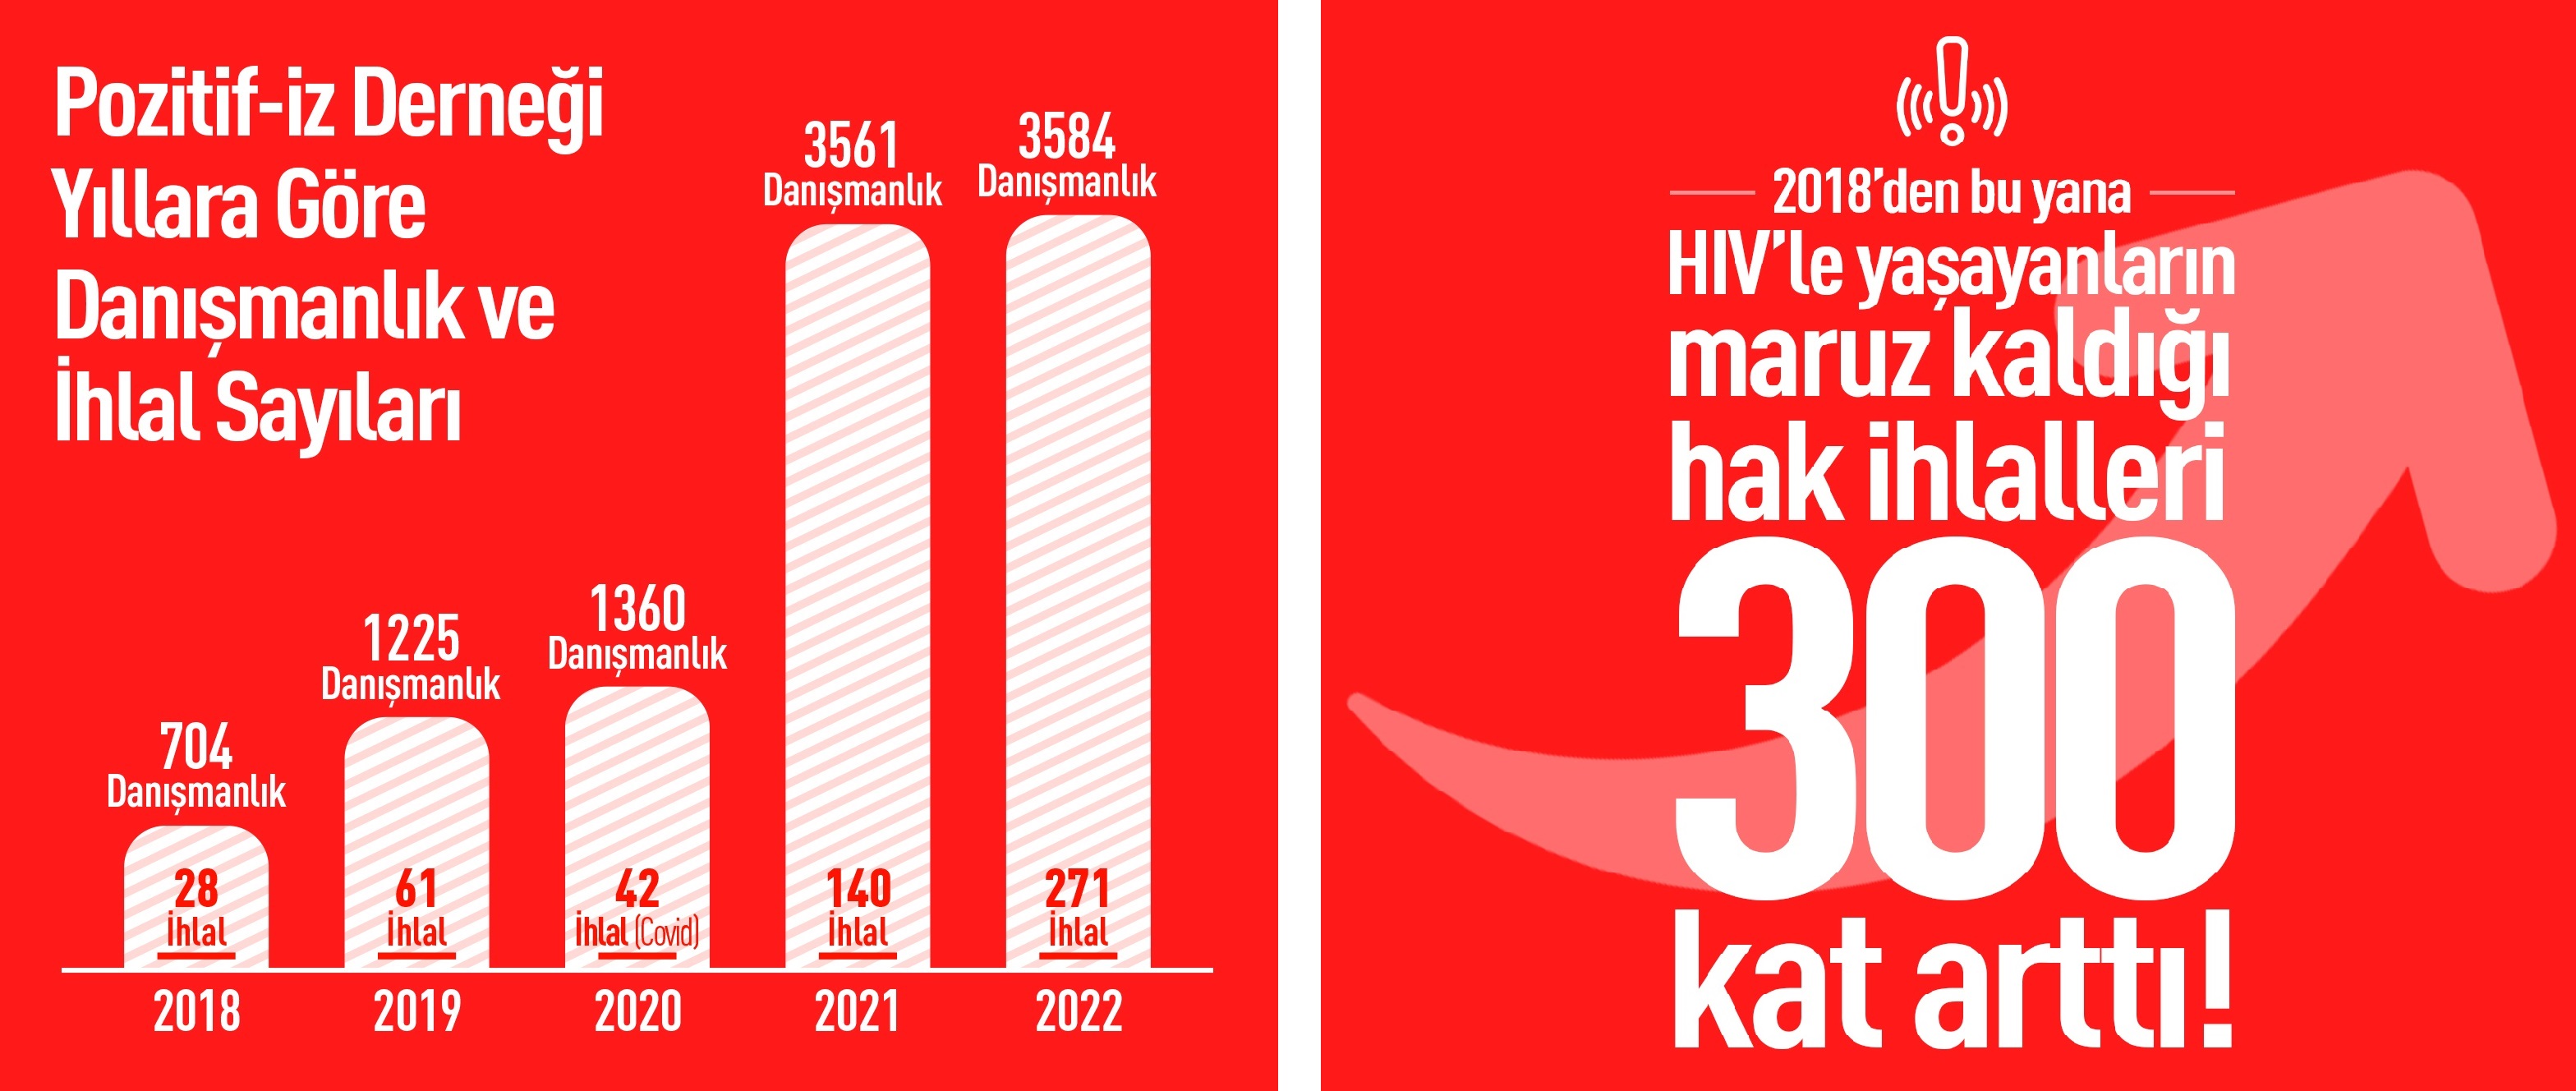 “HIV ile yaşayanların maruz kaldığı hak ihlalleri %300 arttı!” | Kaos GL - LGBTİ+ Haber Portalı Haber